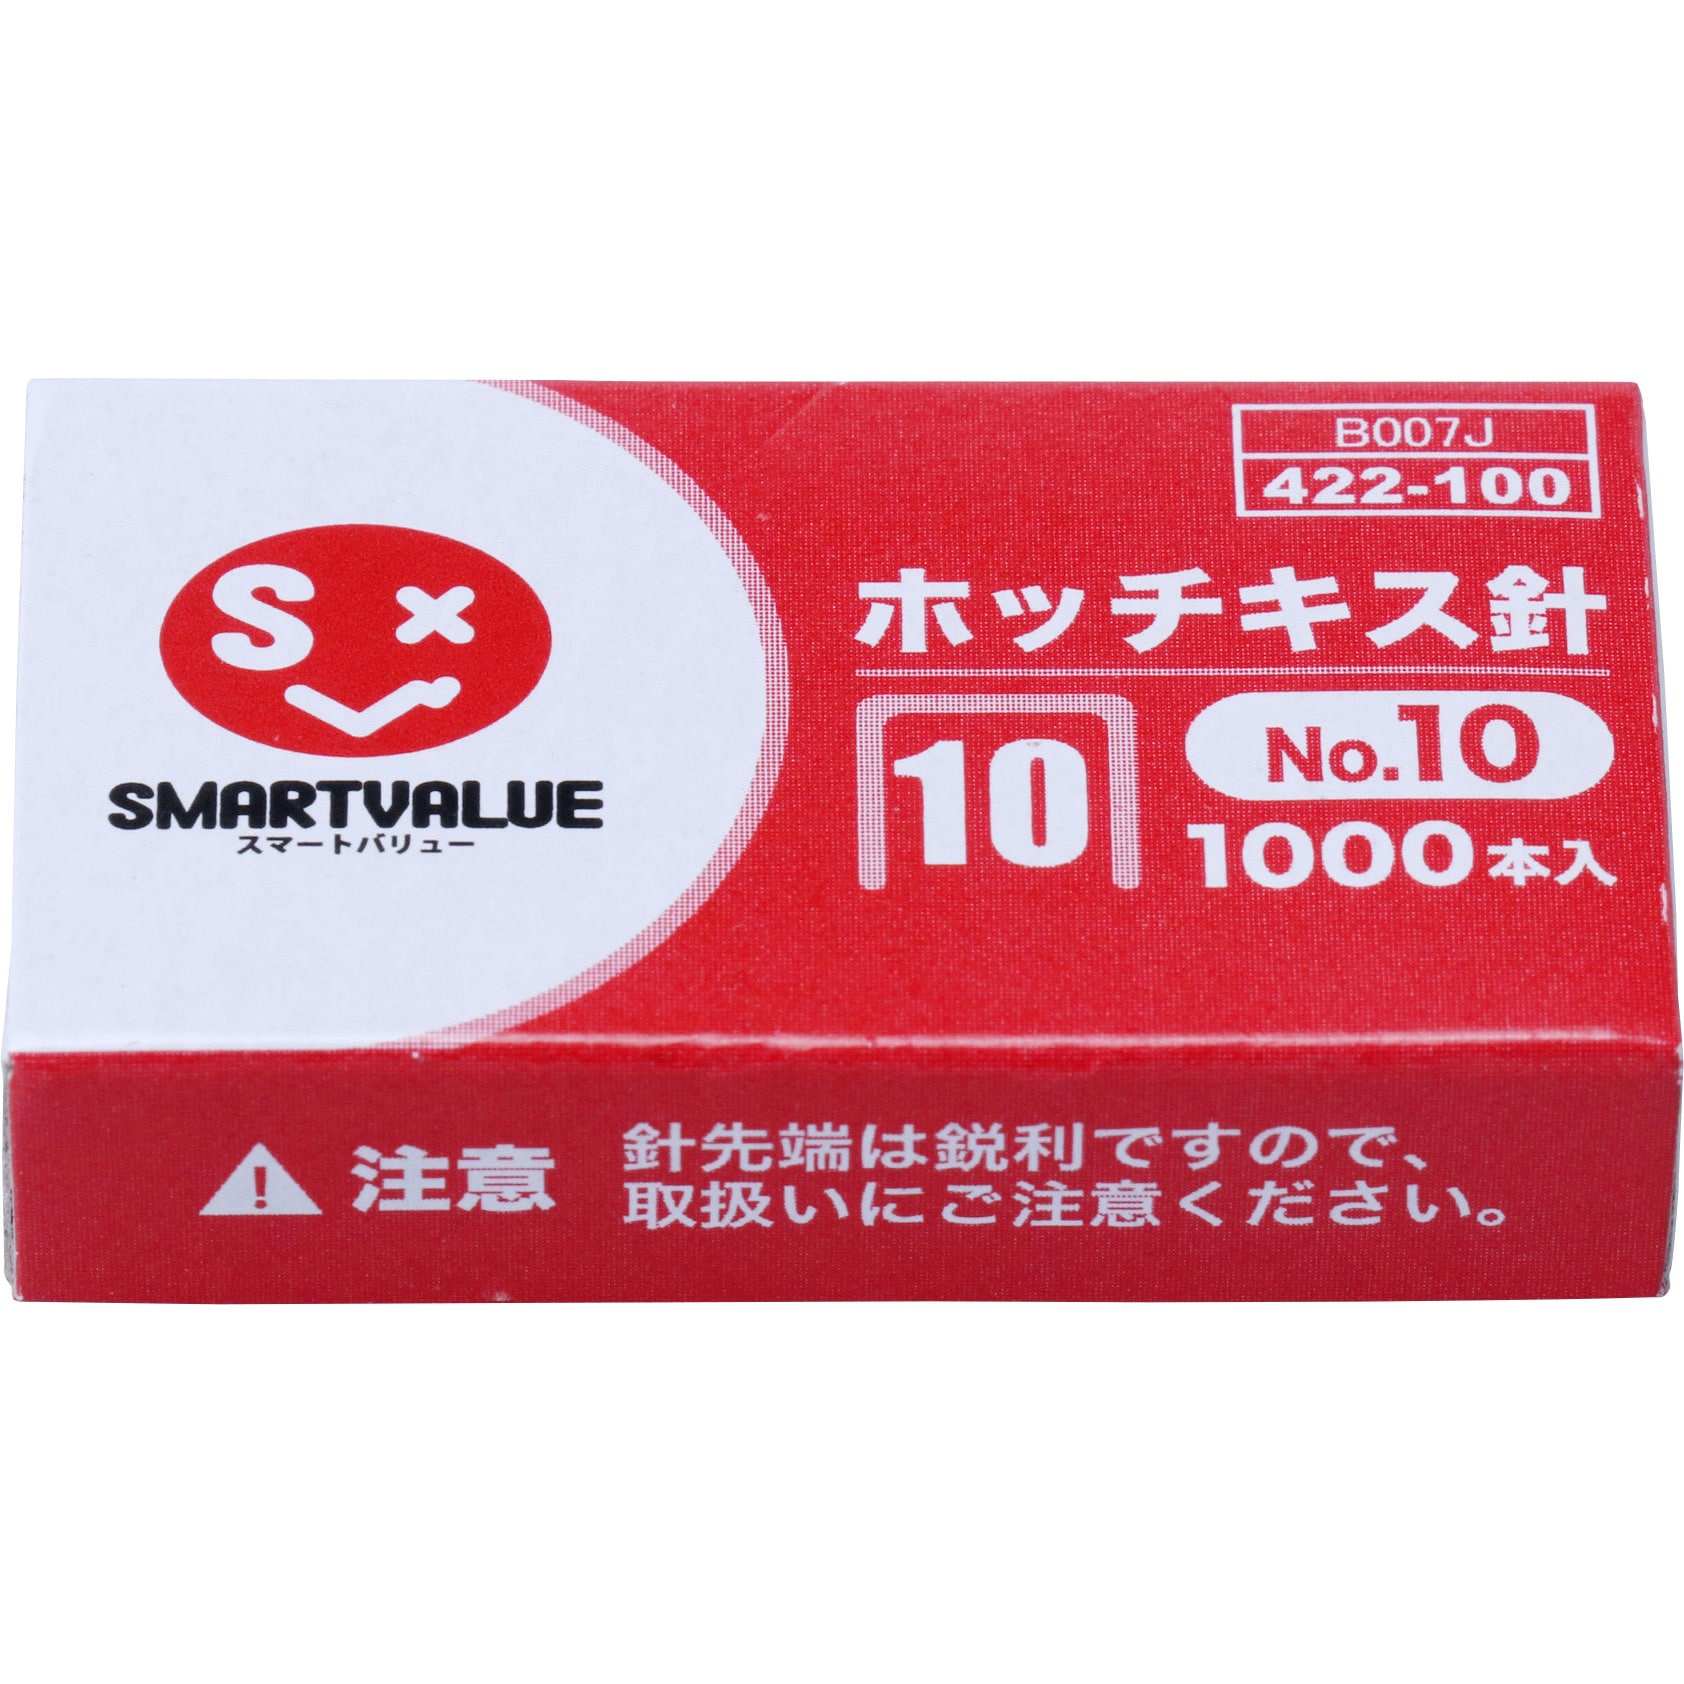 ジョインテックス クラフトテープ SE-S 50巻 B763J-50 梱包、テープ